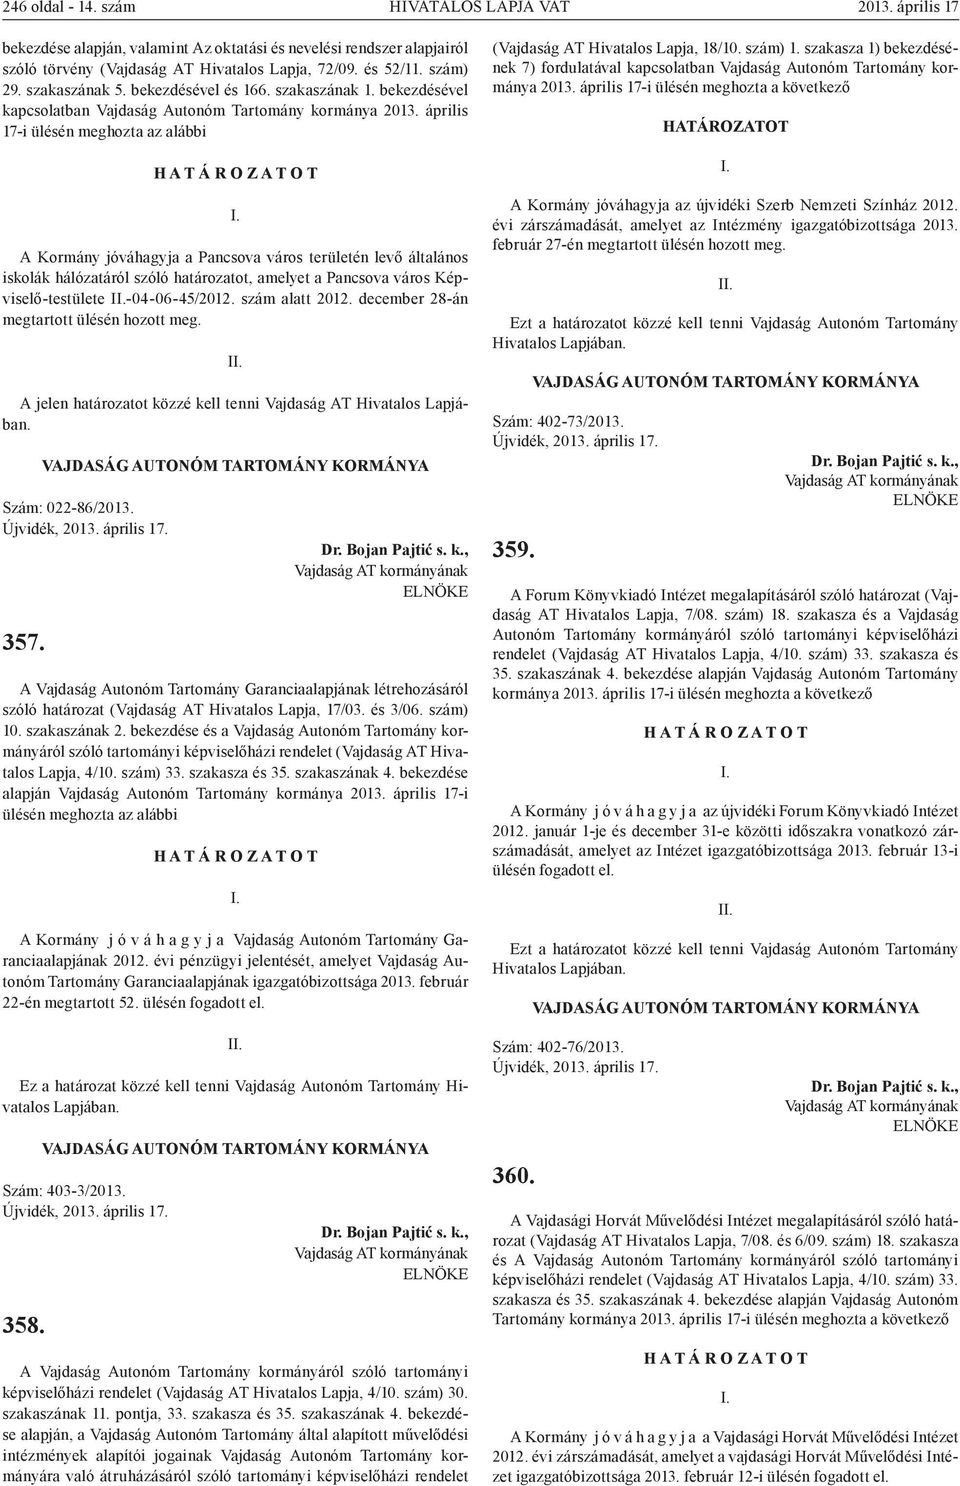 április 17-i ülésén meghozta az alábbi H A T Á R O Z A T O T A Kormány jóváhagyja a Pancsova város területén levő általános iskolák hálózatáról szóló határozatot, amelyet a Pancsova város